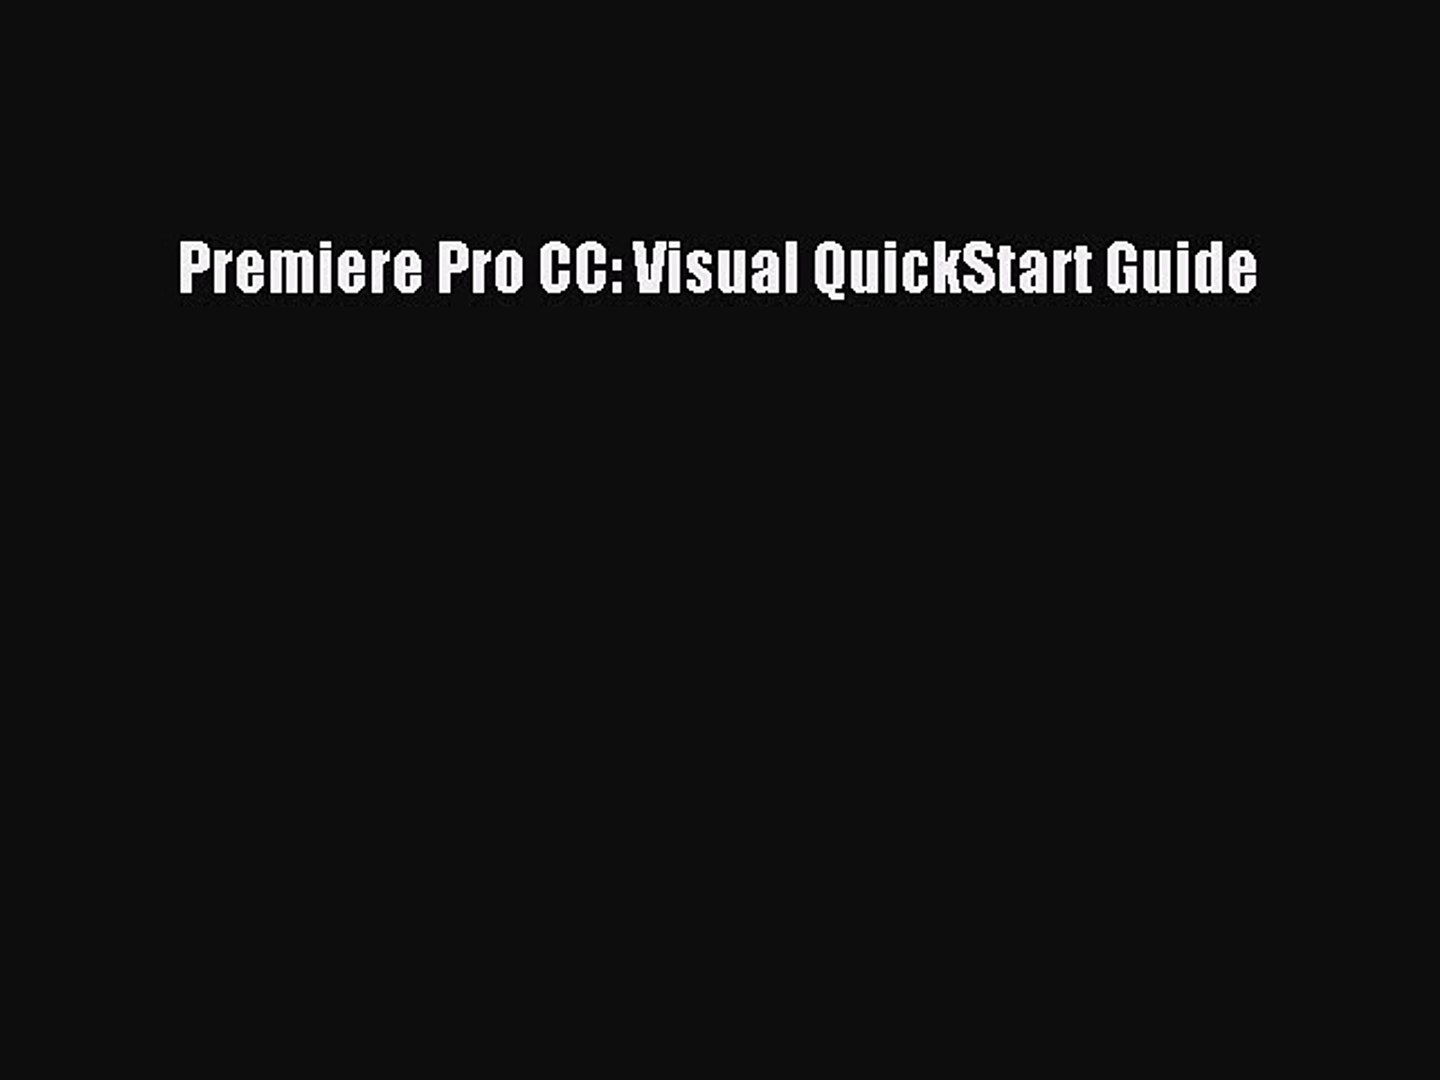 Adobe Premiere Pro Cc Visual Quickstart Guide